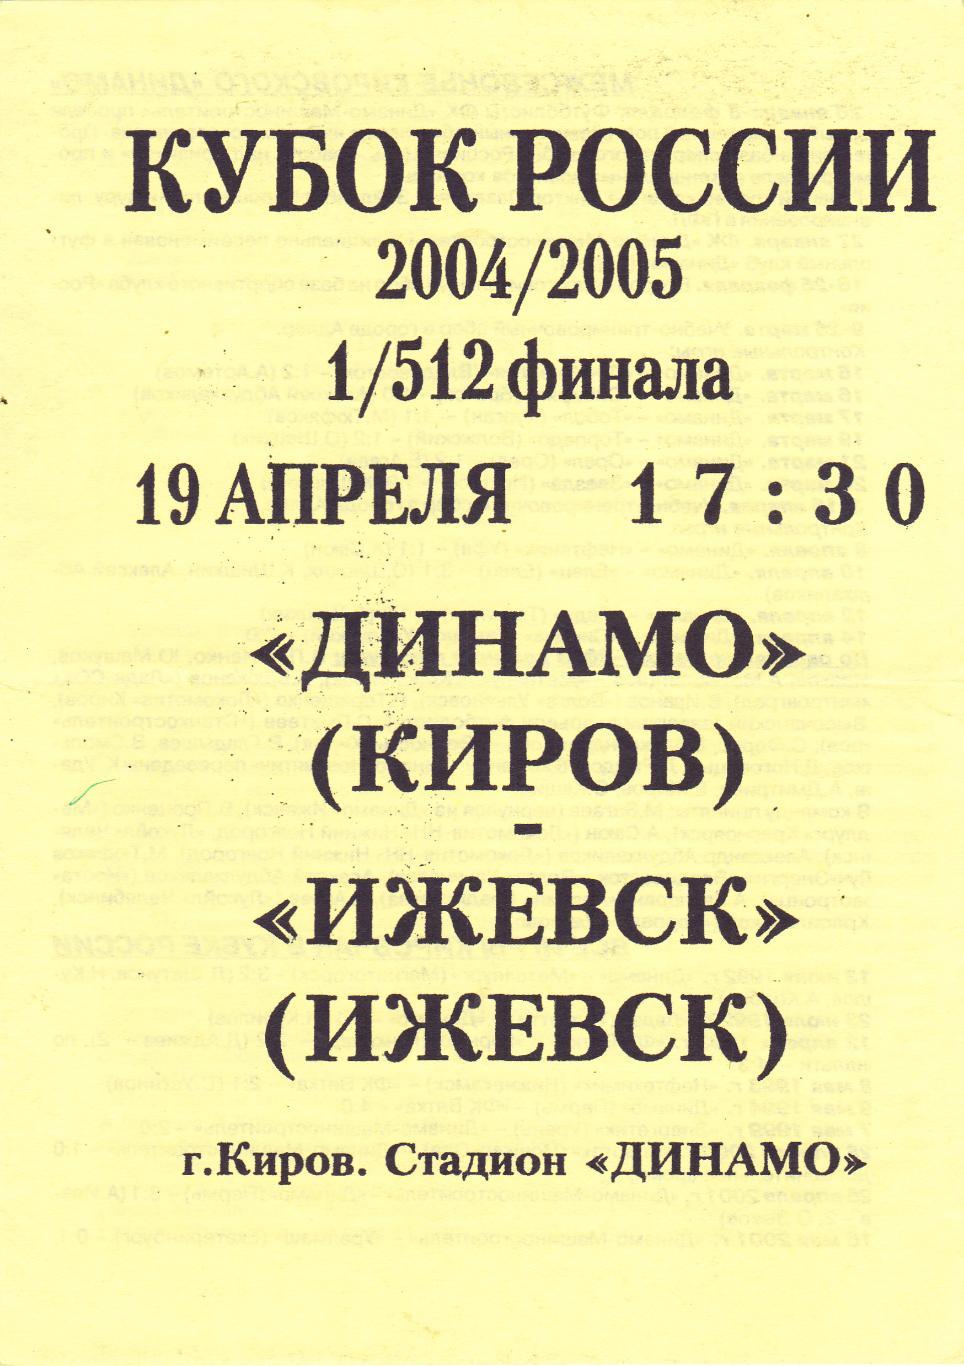 Динамо (Киров) - ФК Ижевск 19.04.2004 Куб.России 1/512